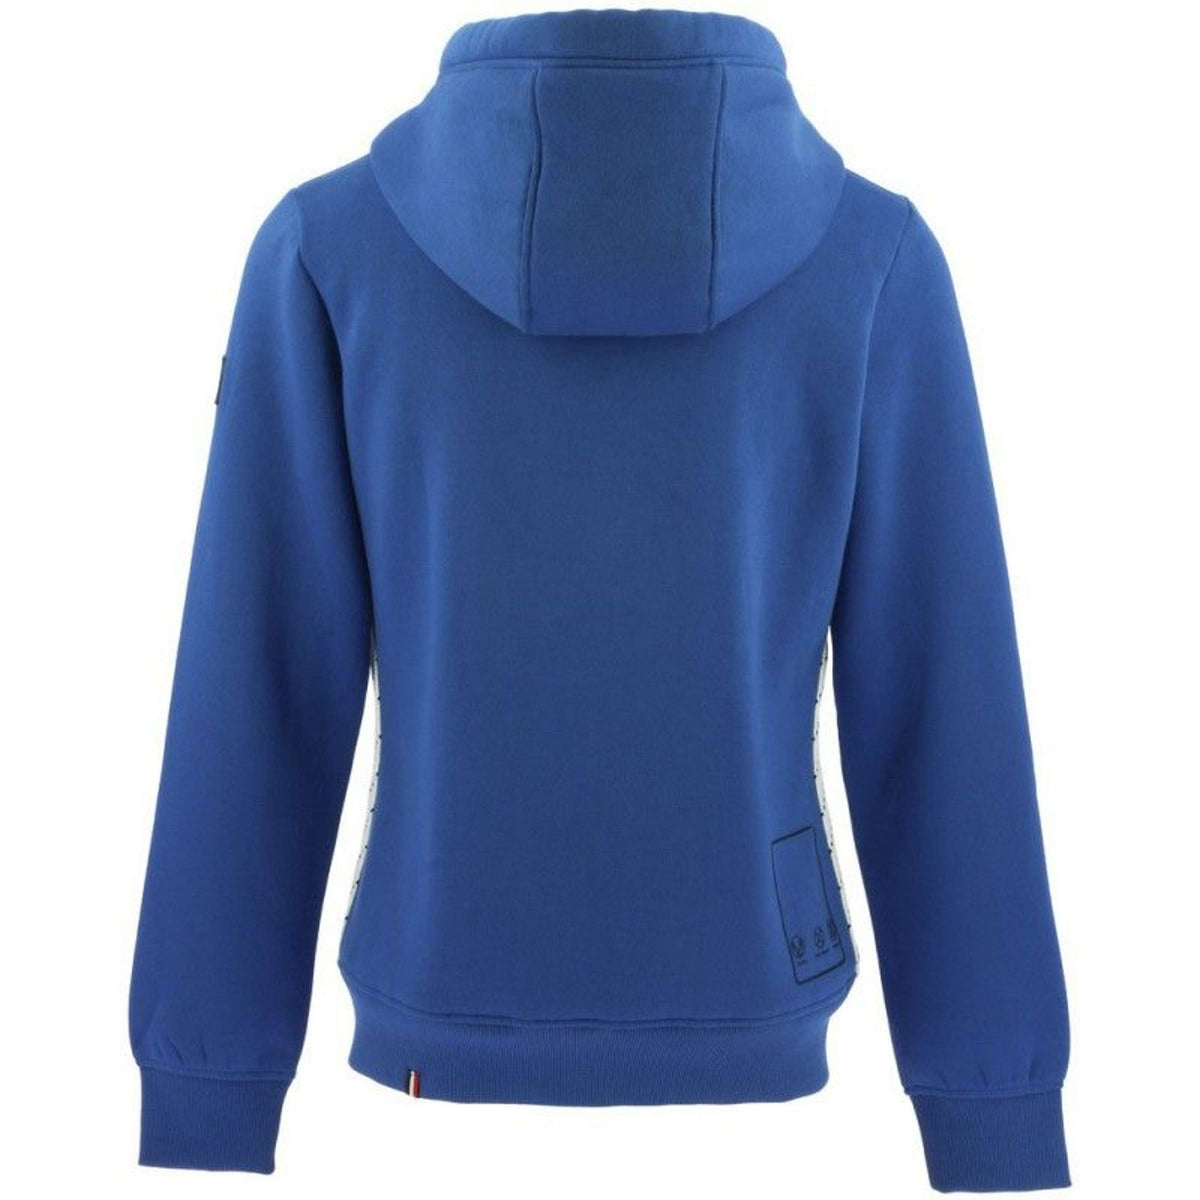 EQUITHÈME Sweater Monique Monaco blau